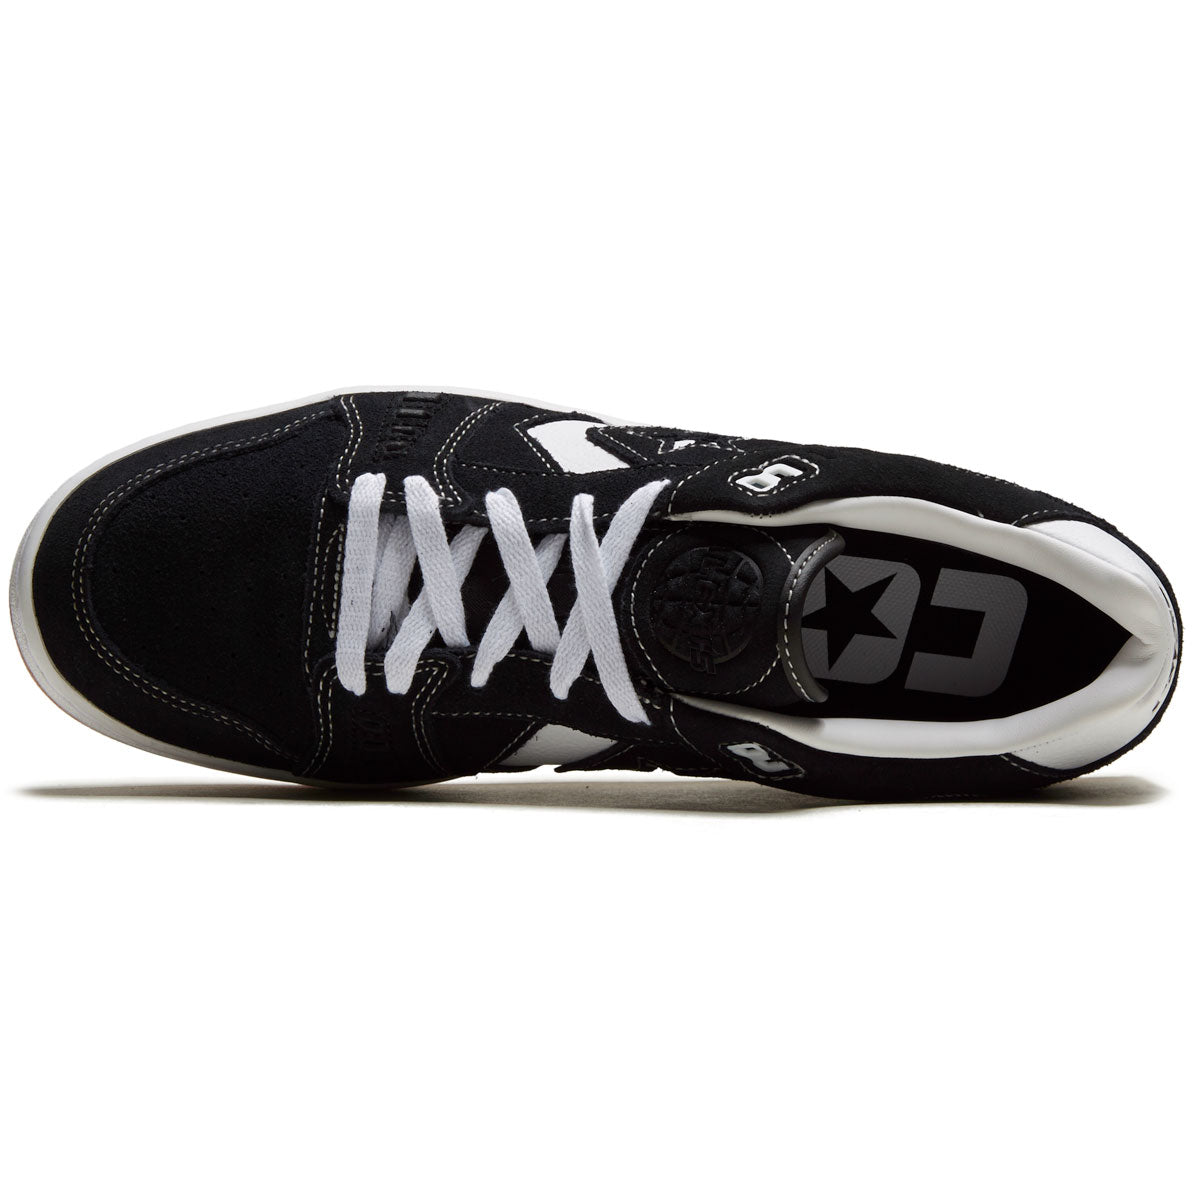 Converse As-1 Pro Shoes - Black/White/Gum image 3